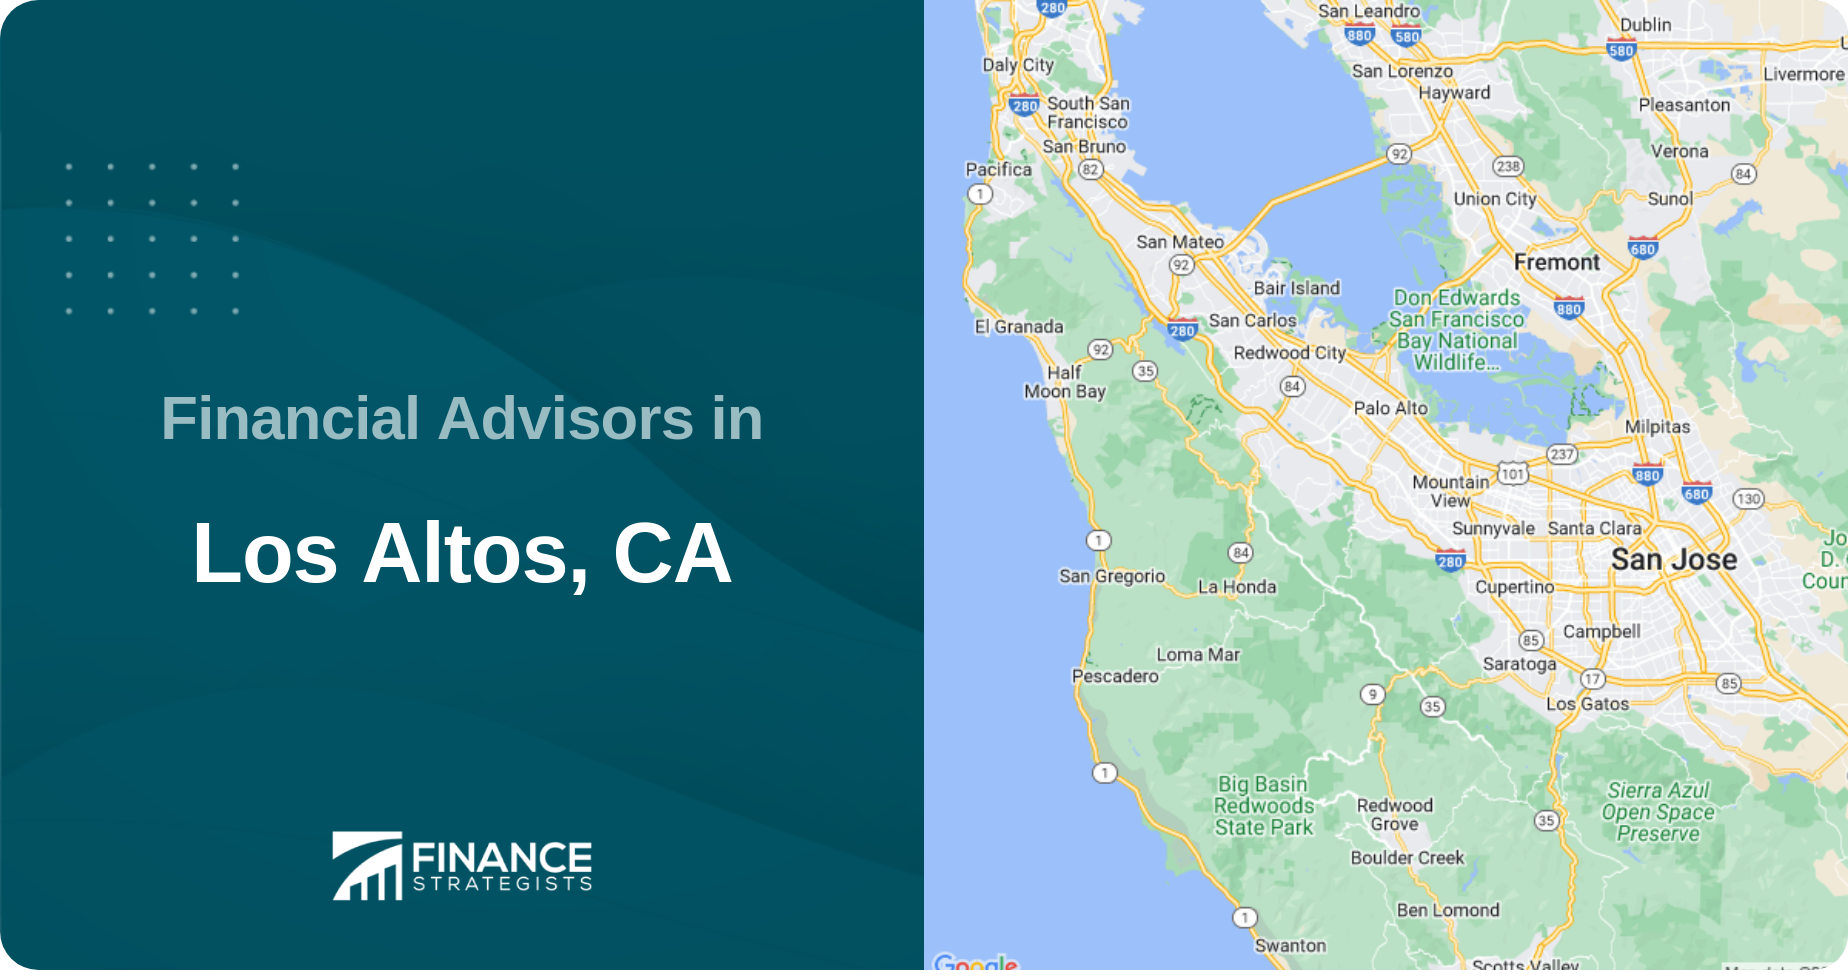 Financial Advisors in Los Altos, CA